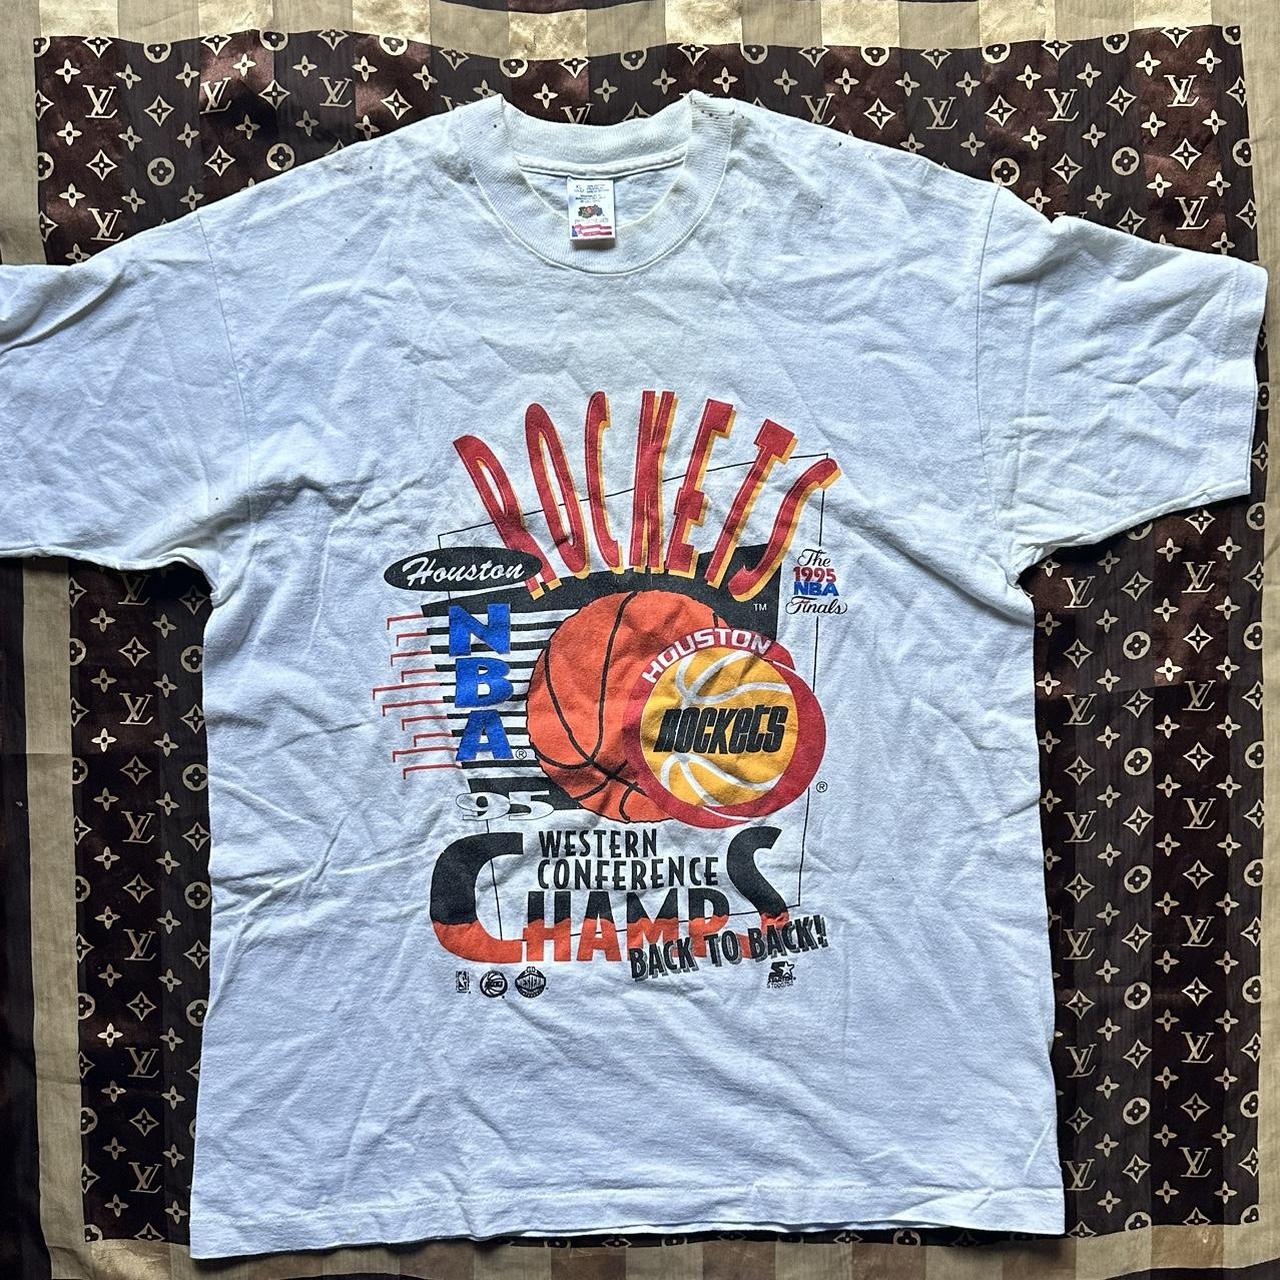 Vintage 1995 NBA world champions Houston Rockets single stitch T-shirt.